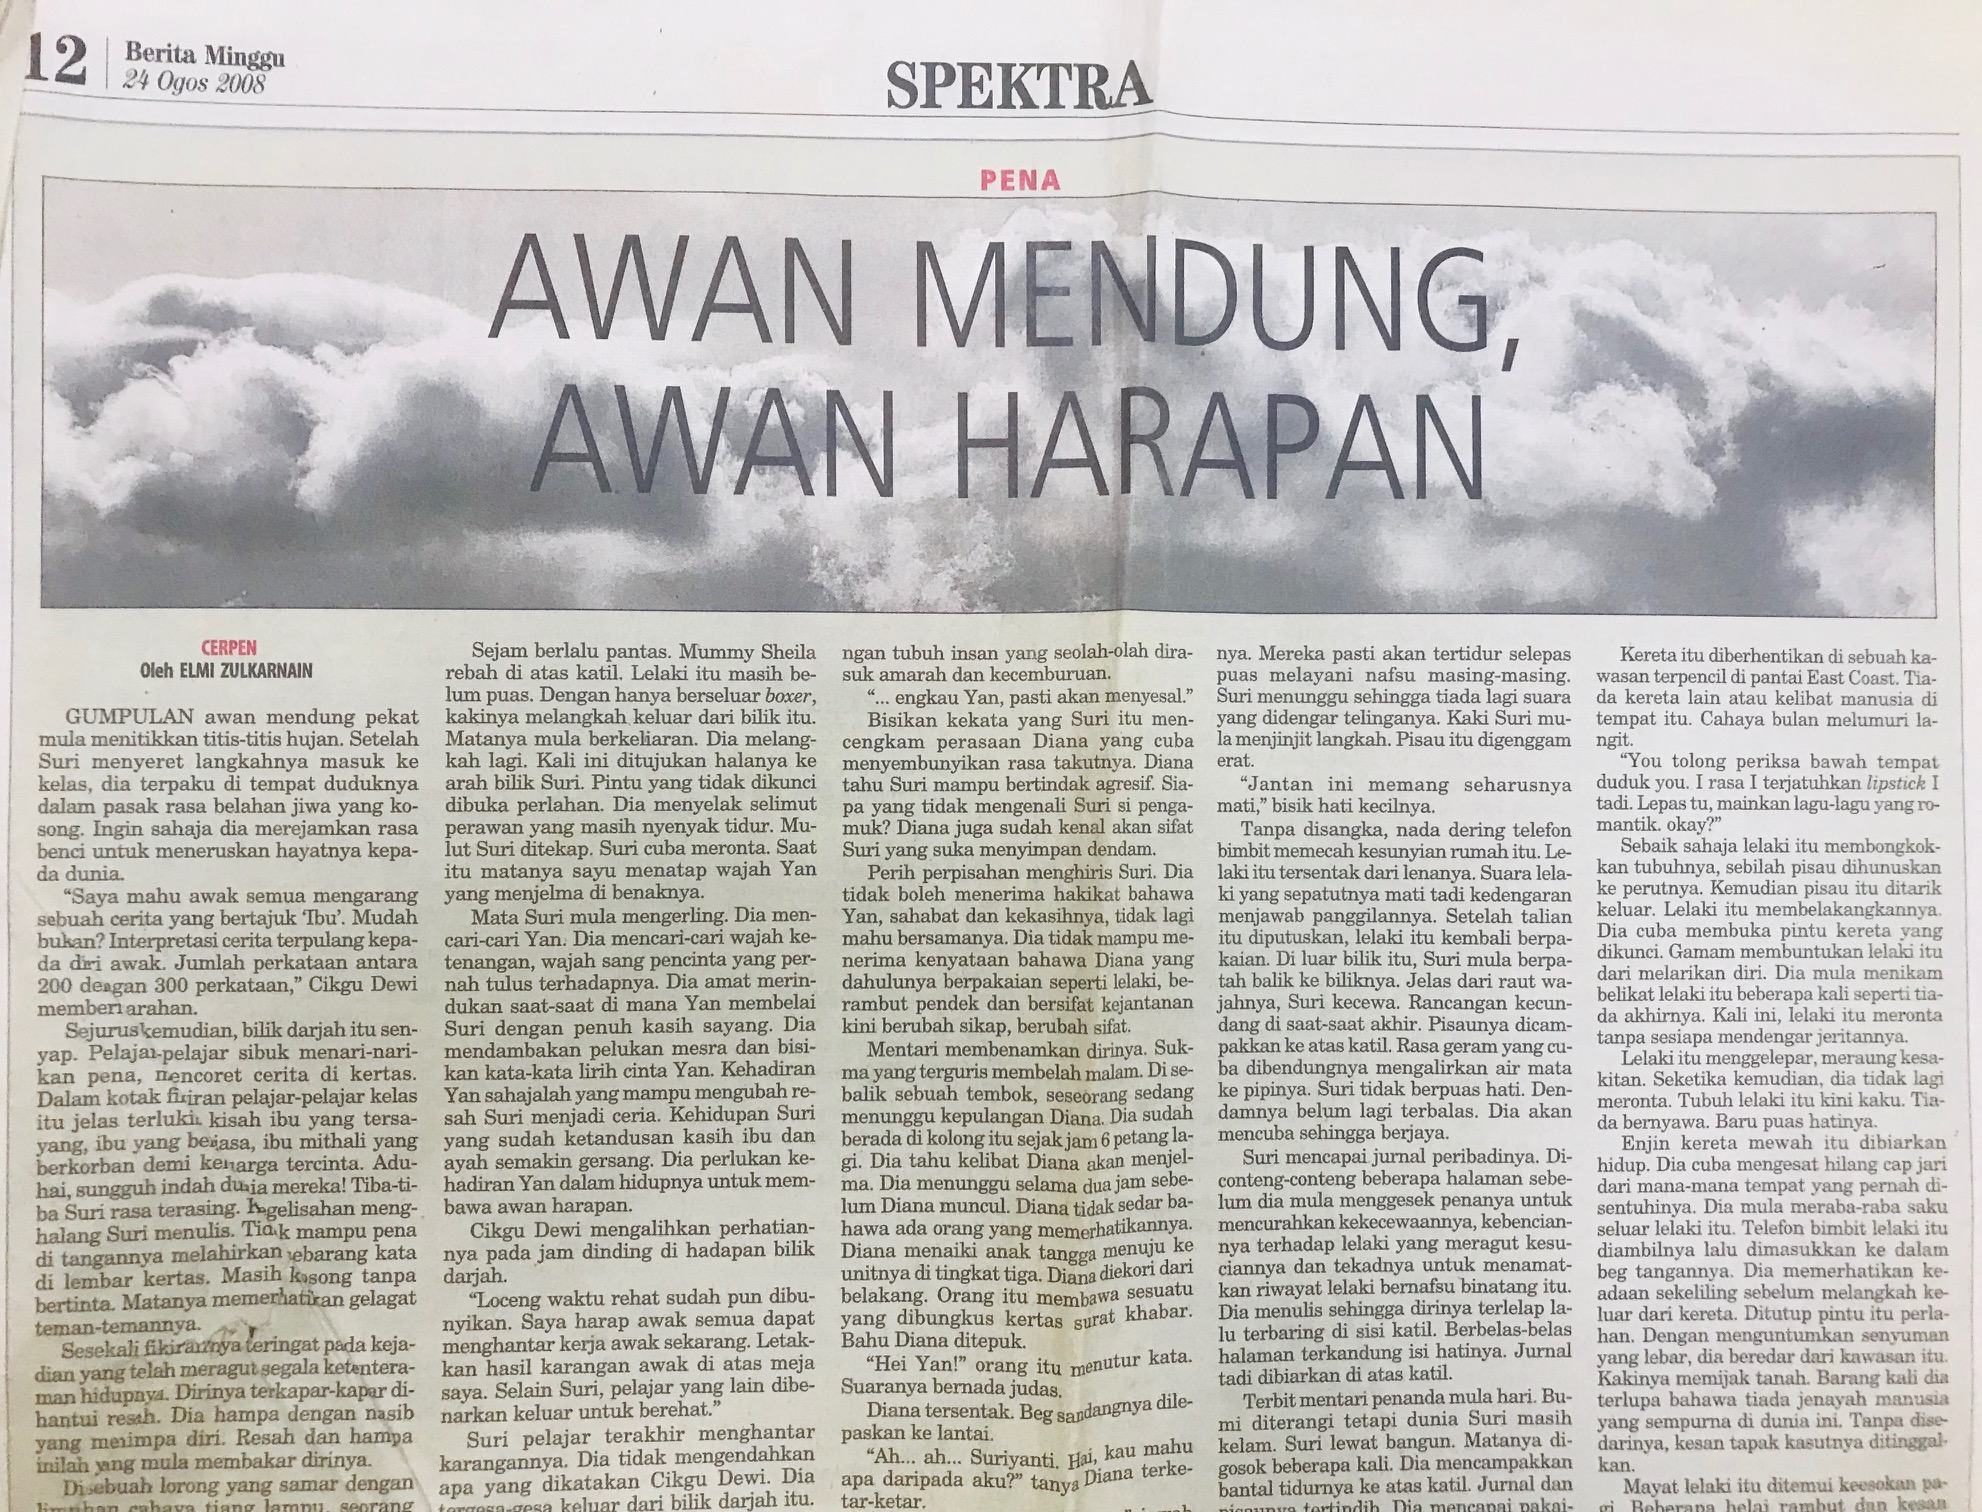 Malay Tutor Dr Elmi Zulkarnain Osman Tuition Cerpen Berita Harian Minggu SPH Awan Mendung Awan Harapan.jpg